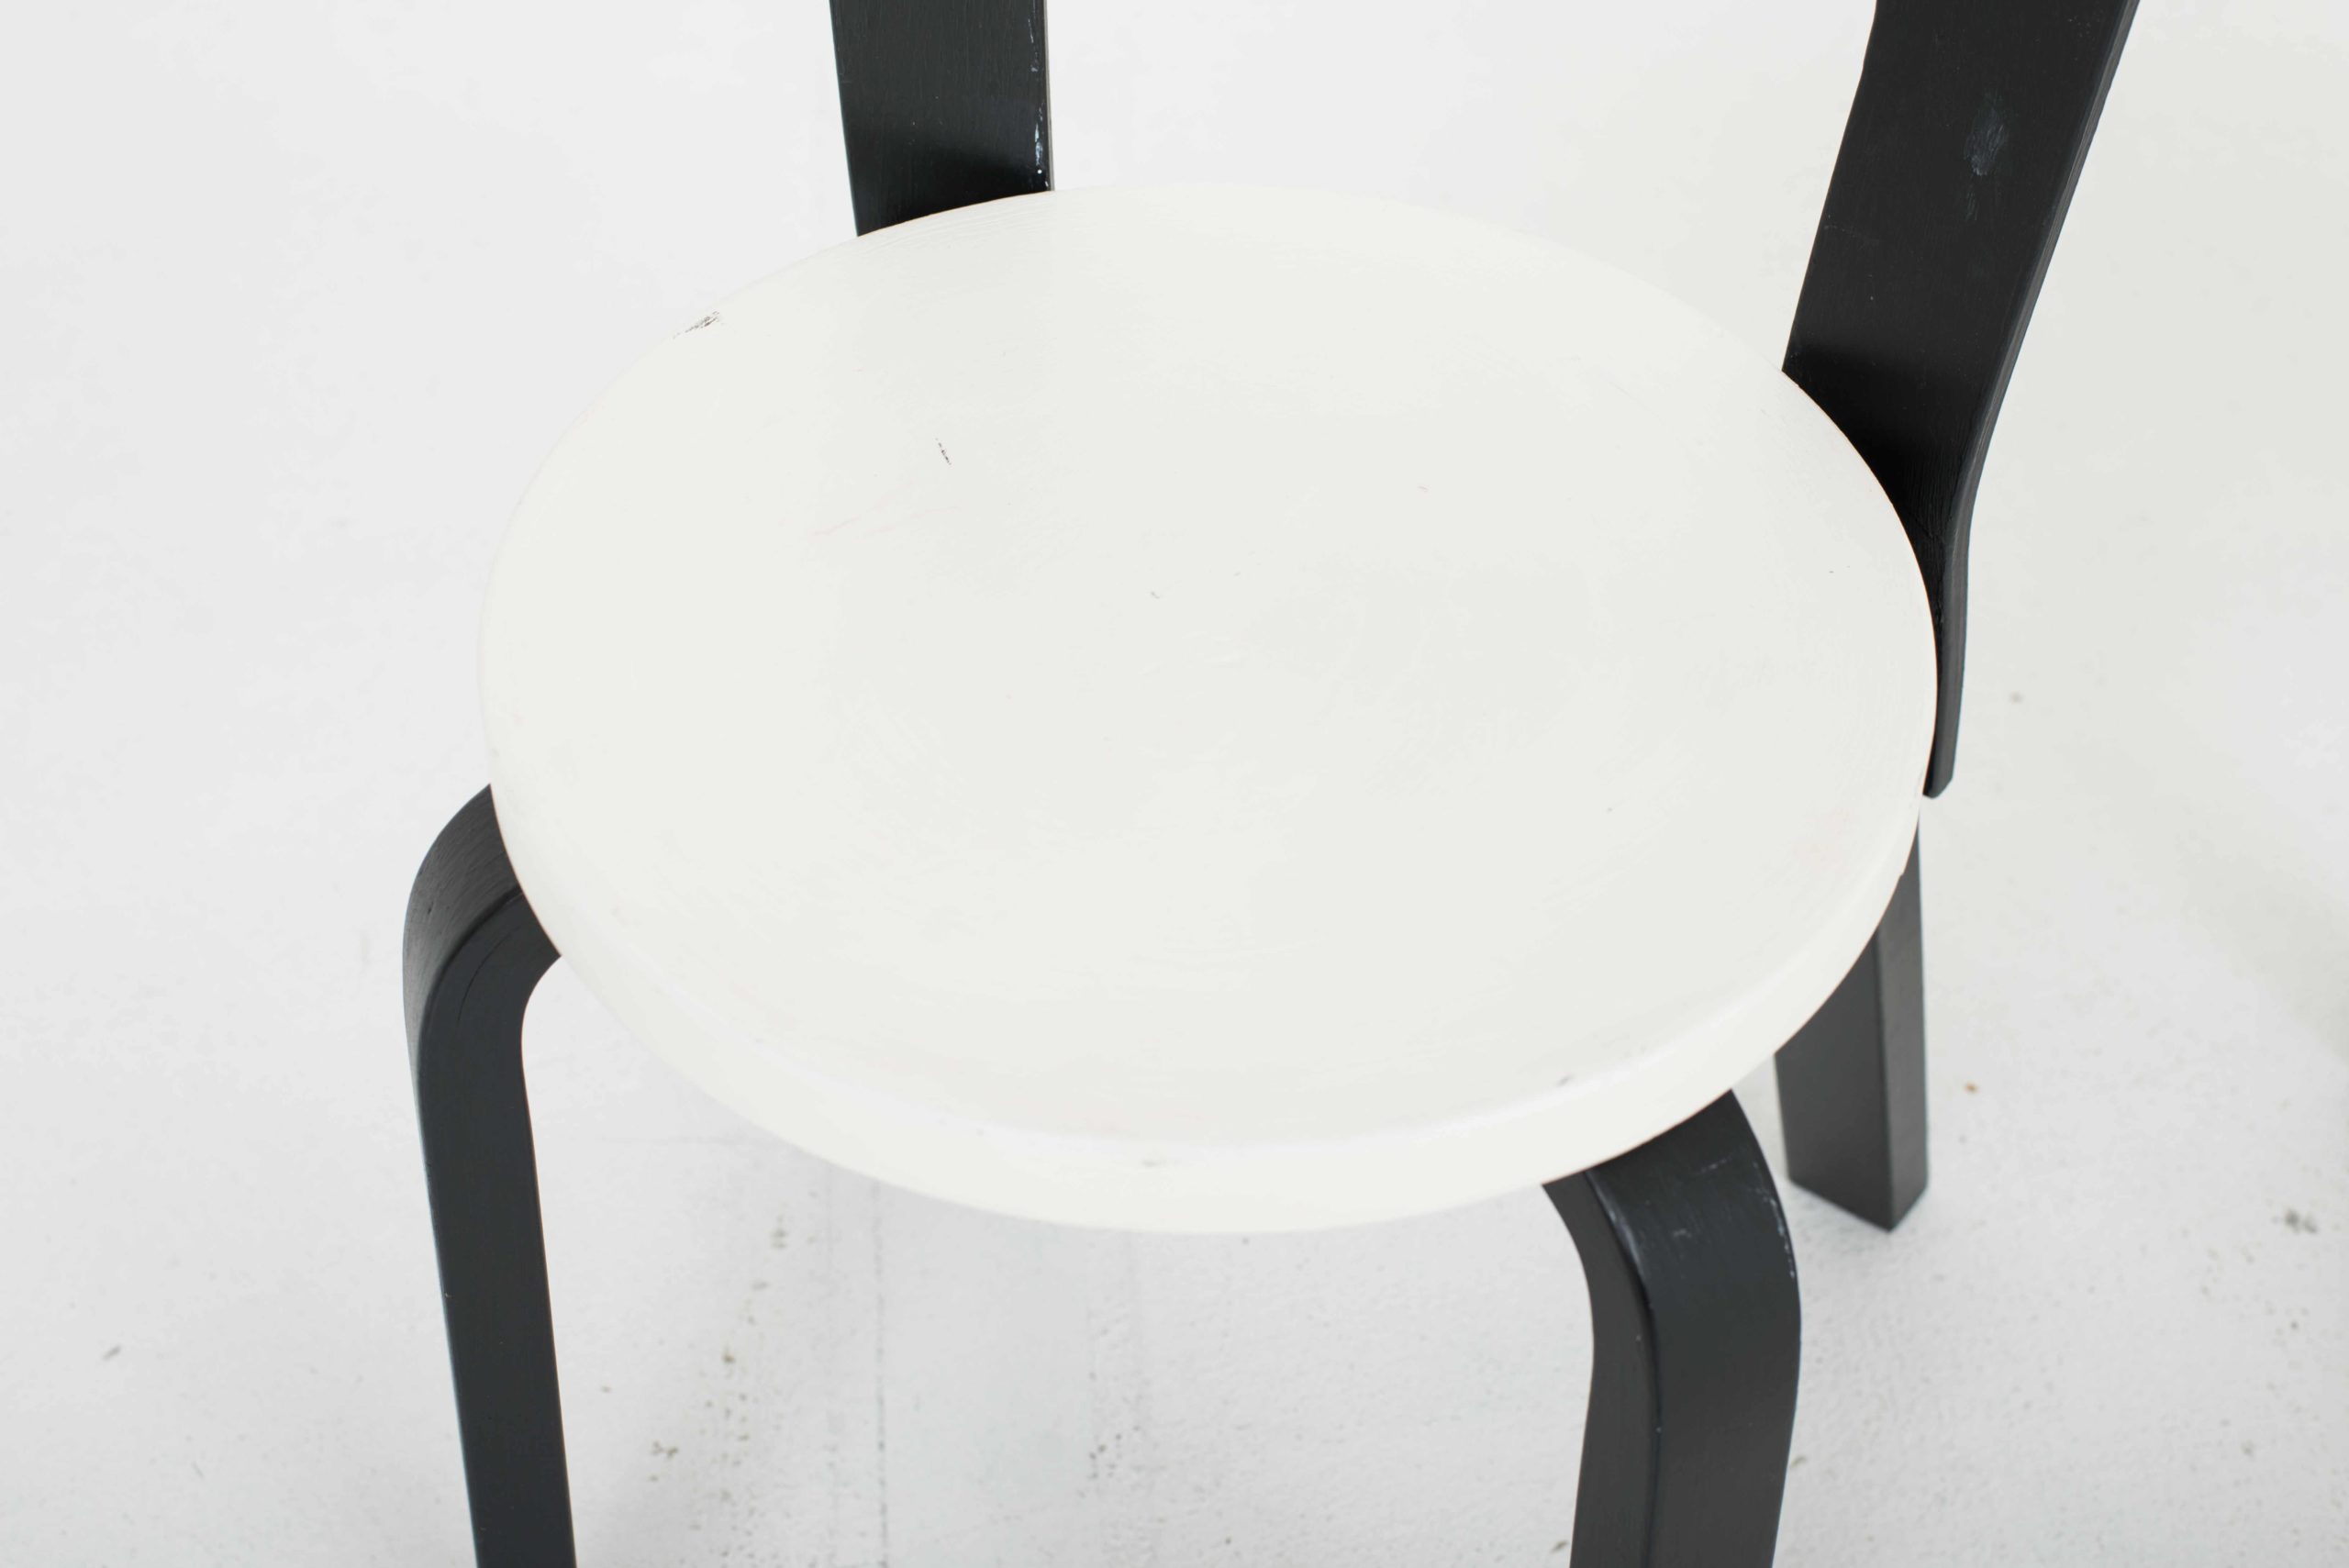 Artek Chair 65 von Alvar Aalto, im Zweierset-4